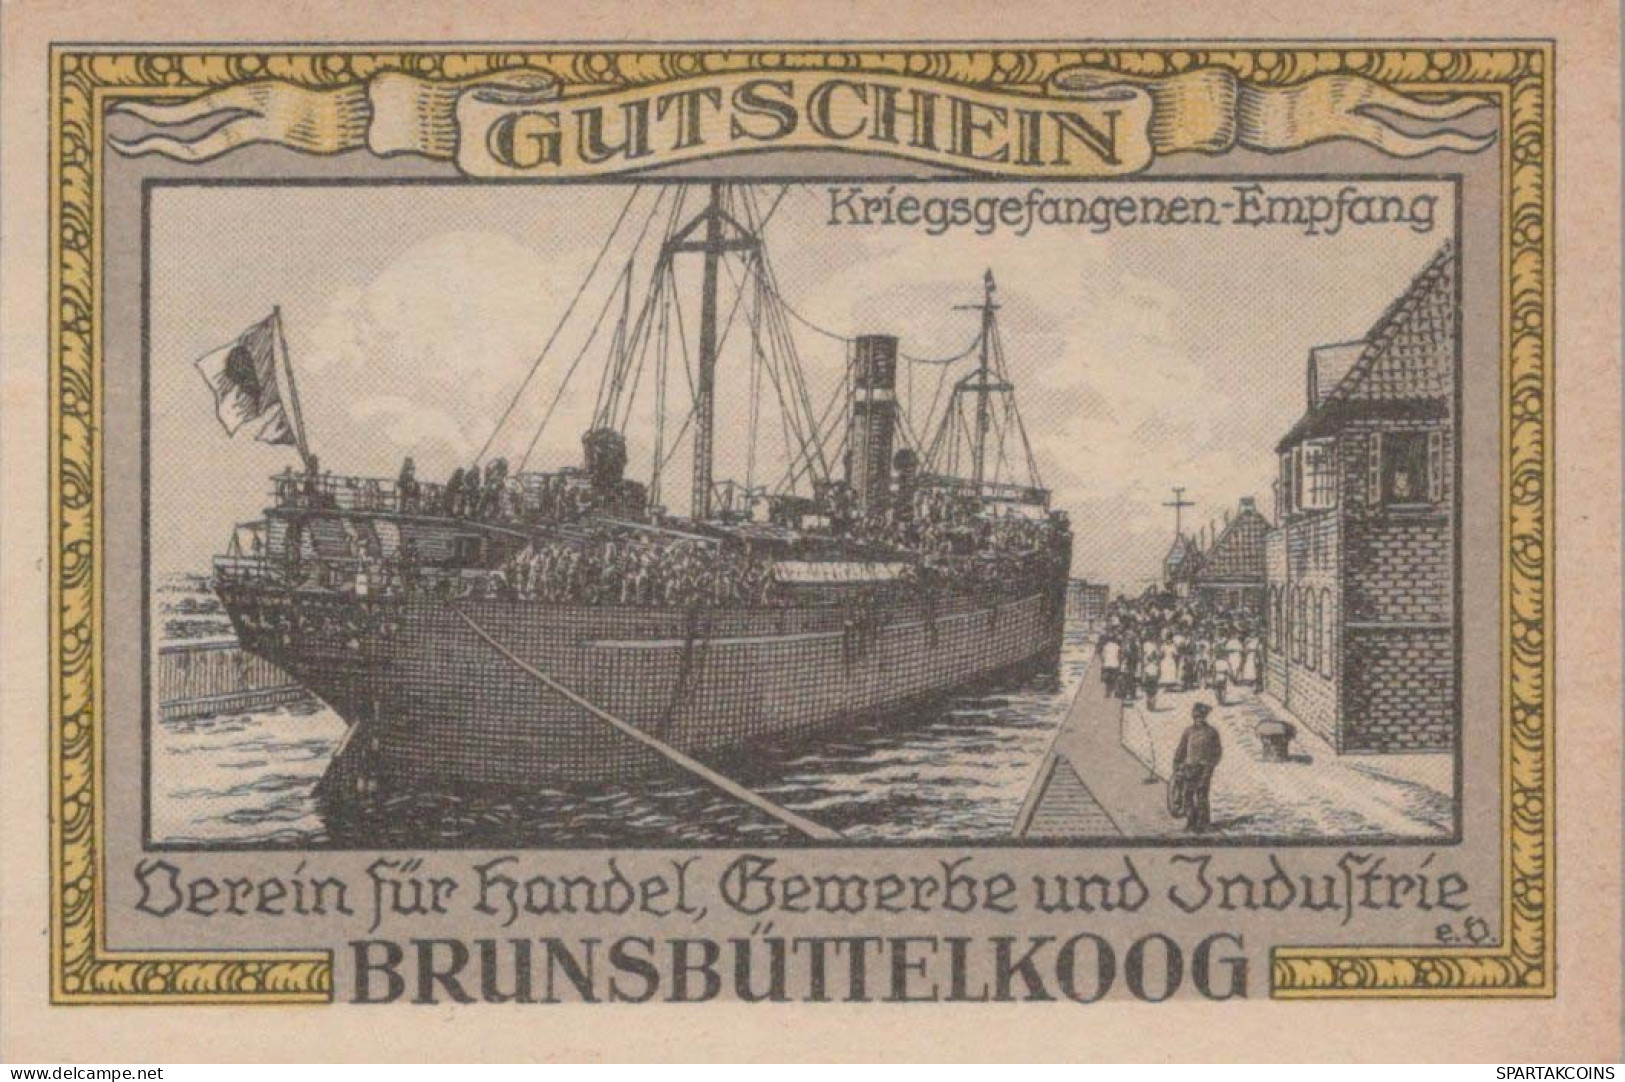 75 PFENNIG 1921 Stadt BRUNSBÜTTELKOOG Schleswig-Holstein UNC DEUTSCHLAND #PI482 - [11] Local Banknote Issues